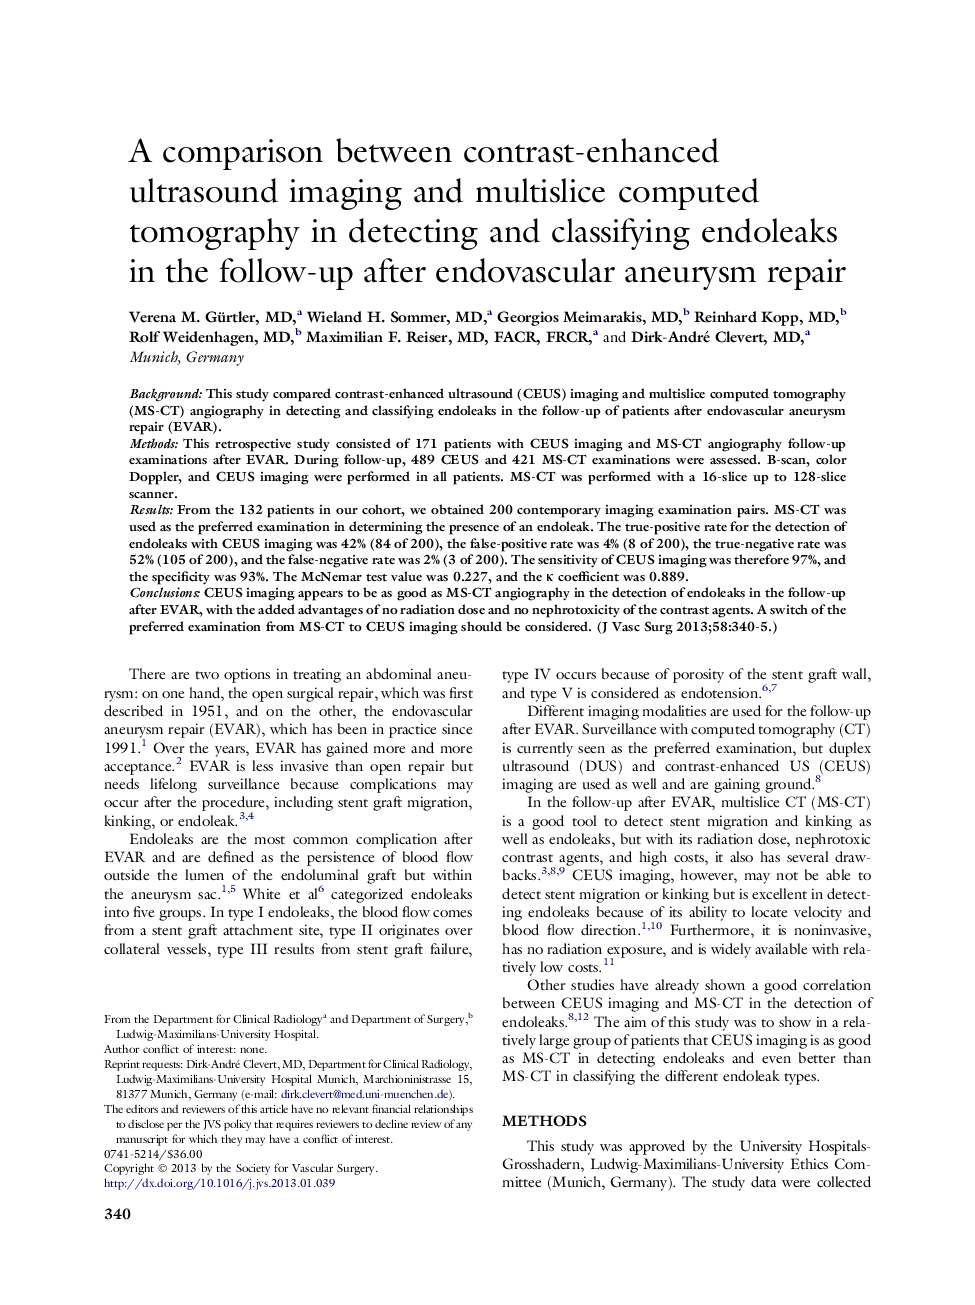 مقایسه بین تصویربرداری سونوگرافی با کنتراست و توموگرافی کامپیوتری چندتایی در تشخیص و طبقه بندی اندولواکس در پیگیری پس از ترمیم آنوریسمی آندواسکوسی 